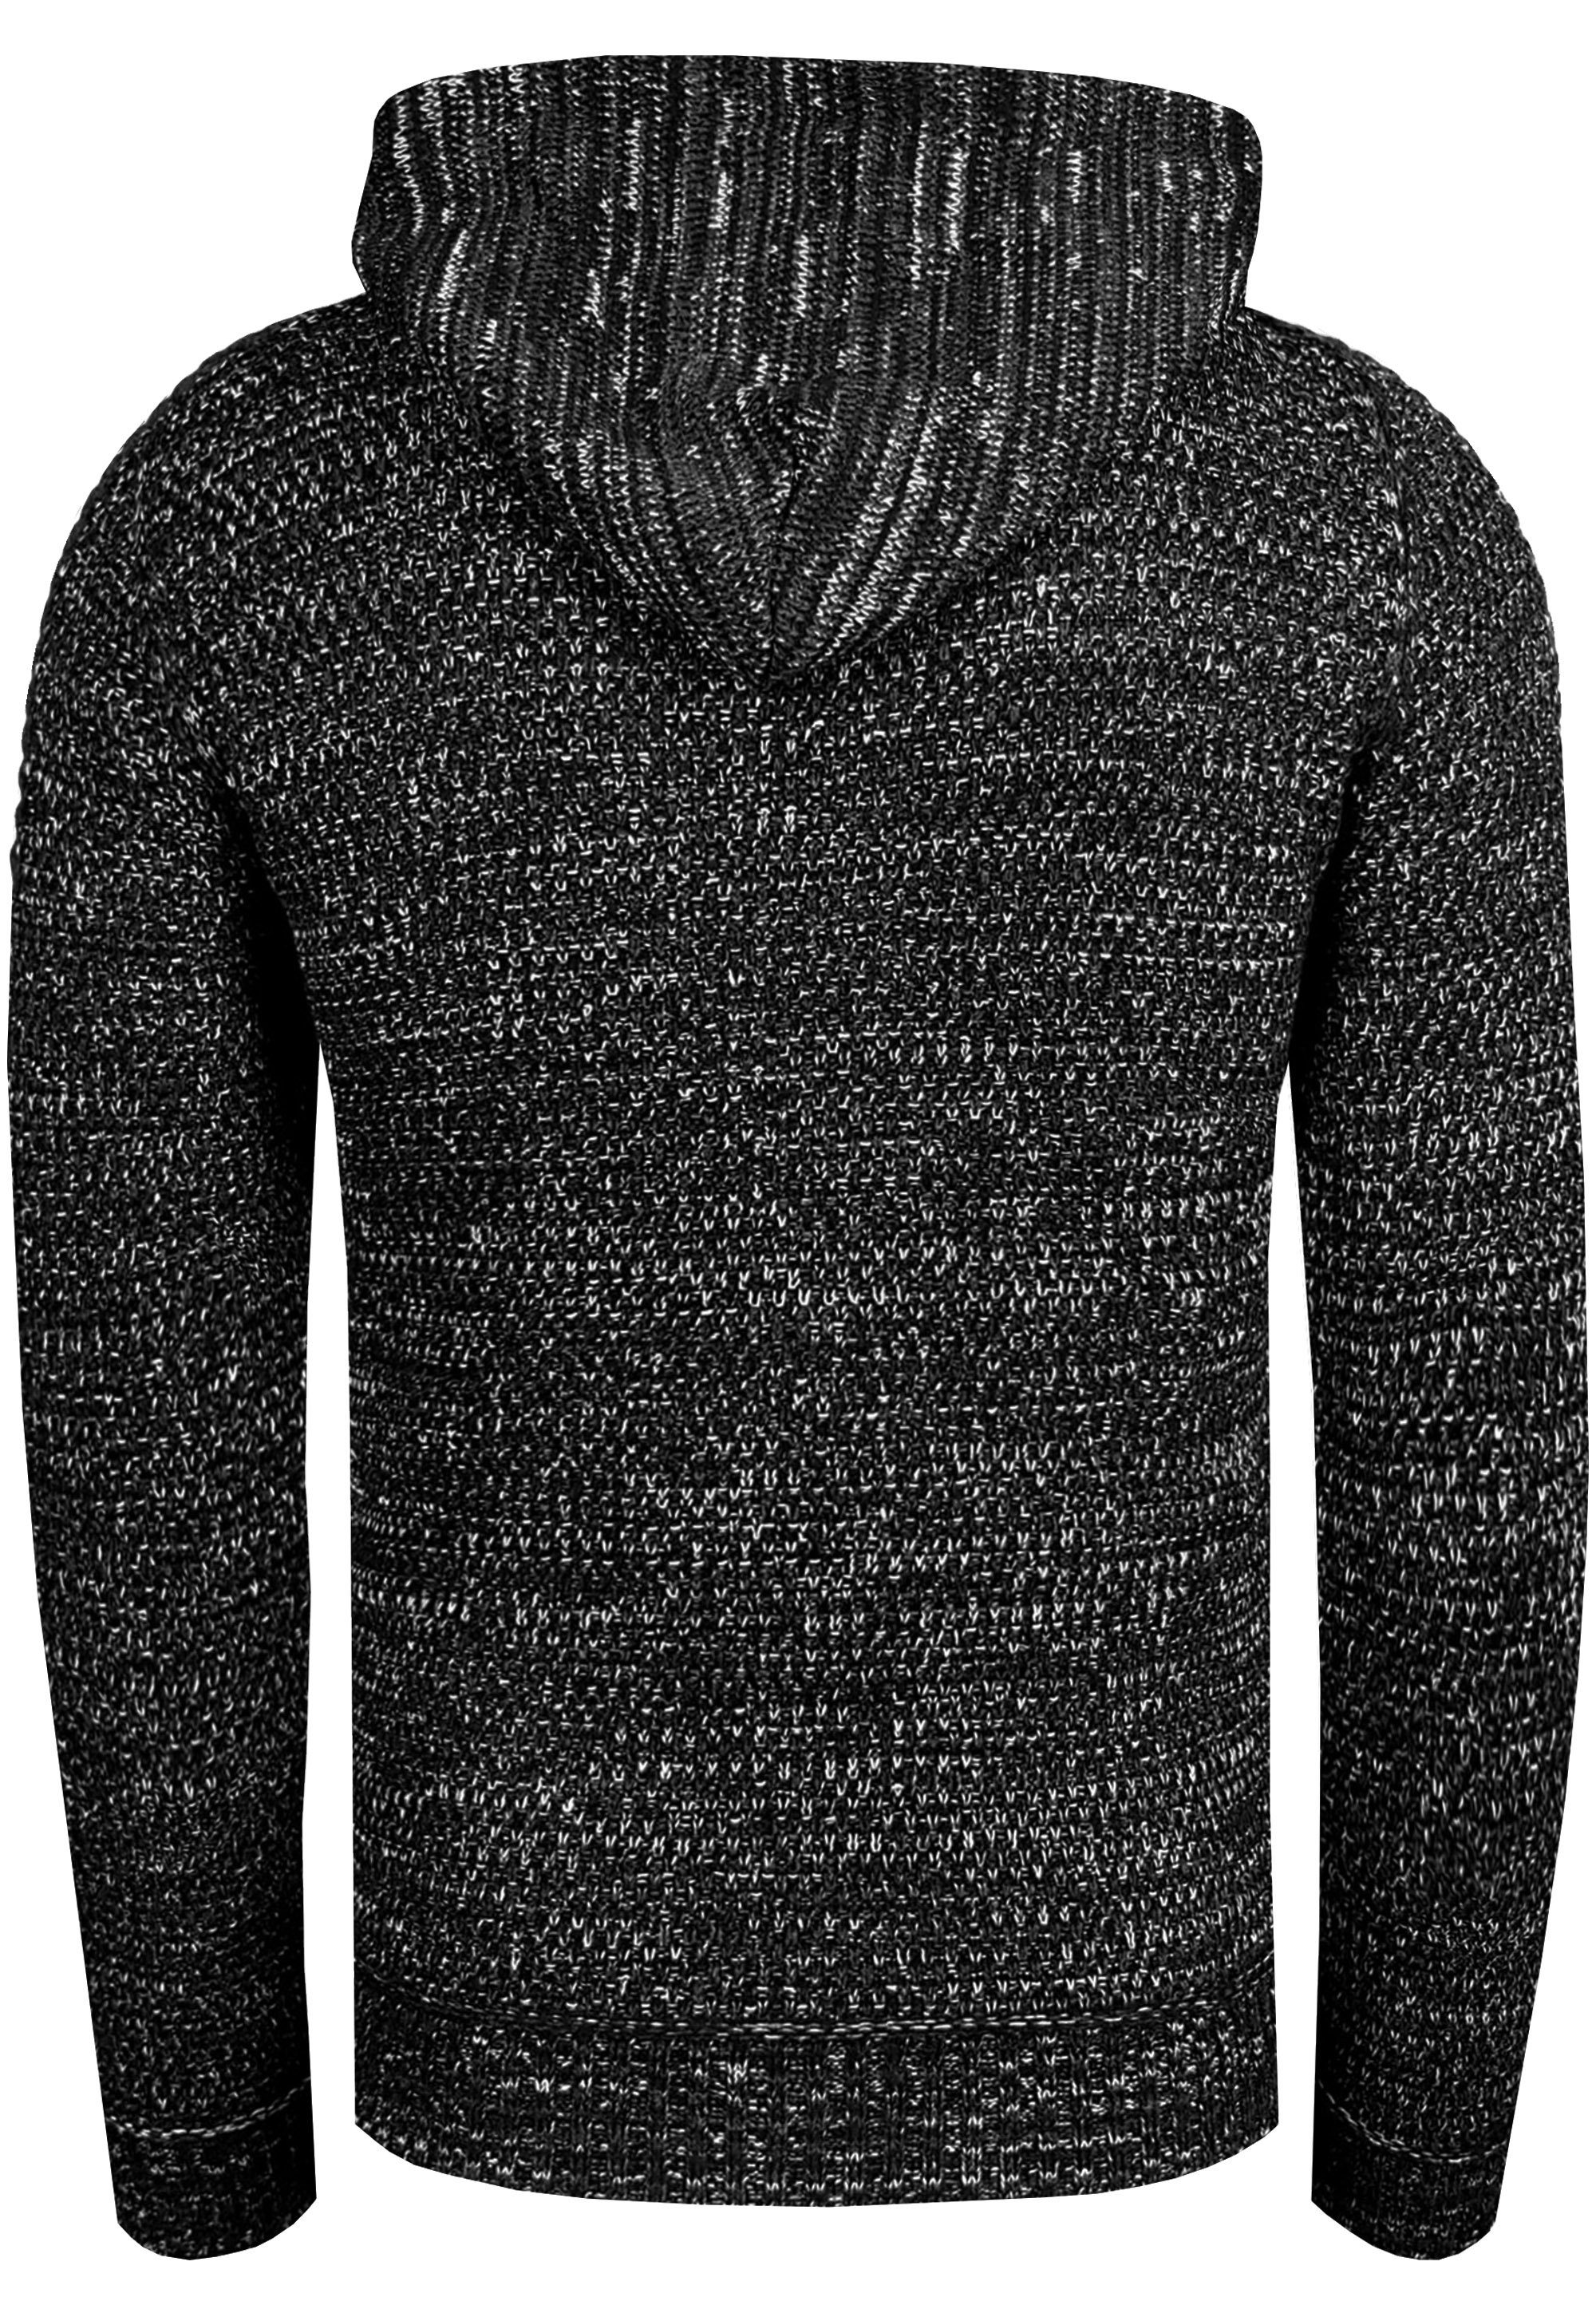 Kapuzensweatshirt schwarz Reißverschluss Rusty Knitwear mit Neal praktischem